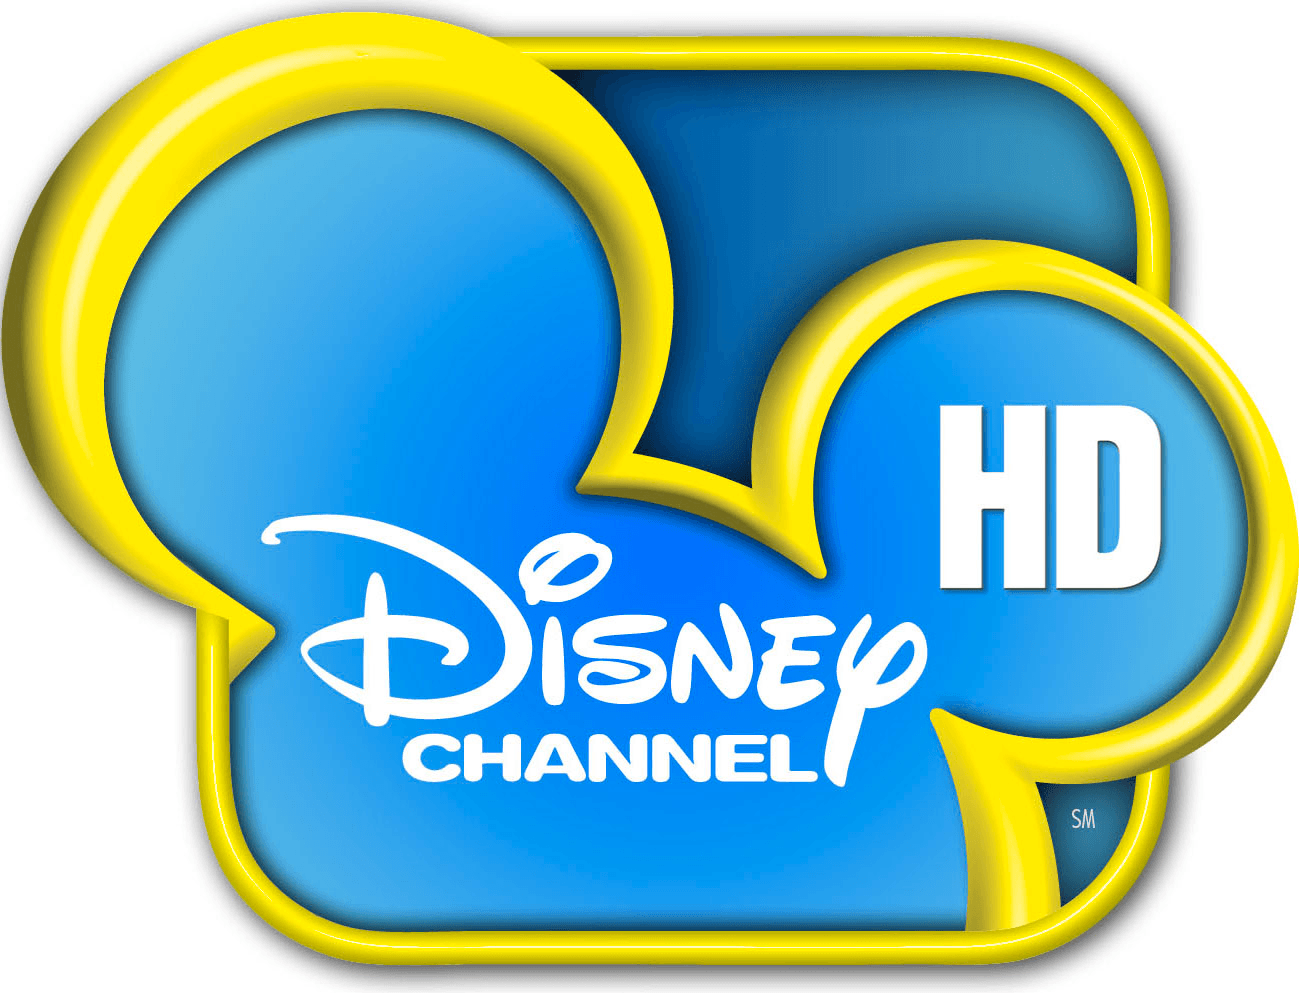 Тв канал дисней. Эмблема канала Дисней. Телеканал Дисней. Логотип телеканала канал Disney. Диний логотип Телеканал.